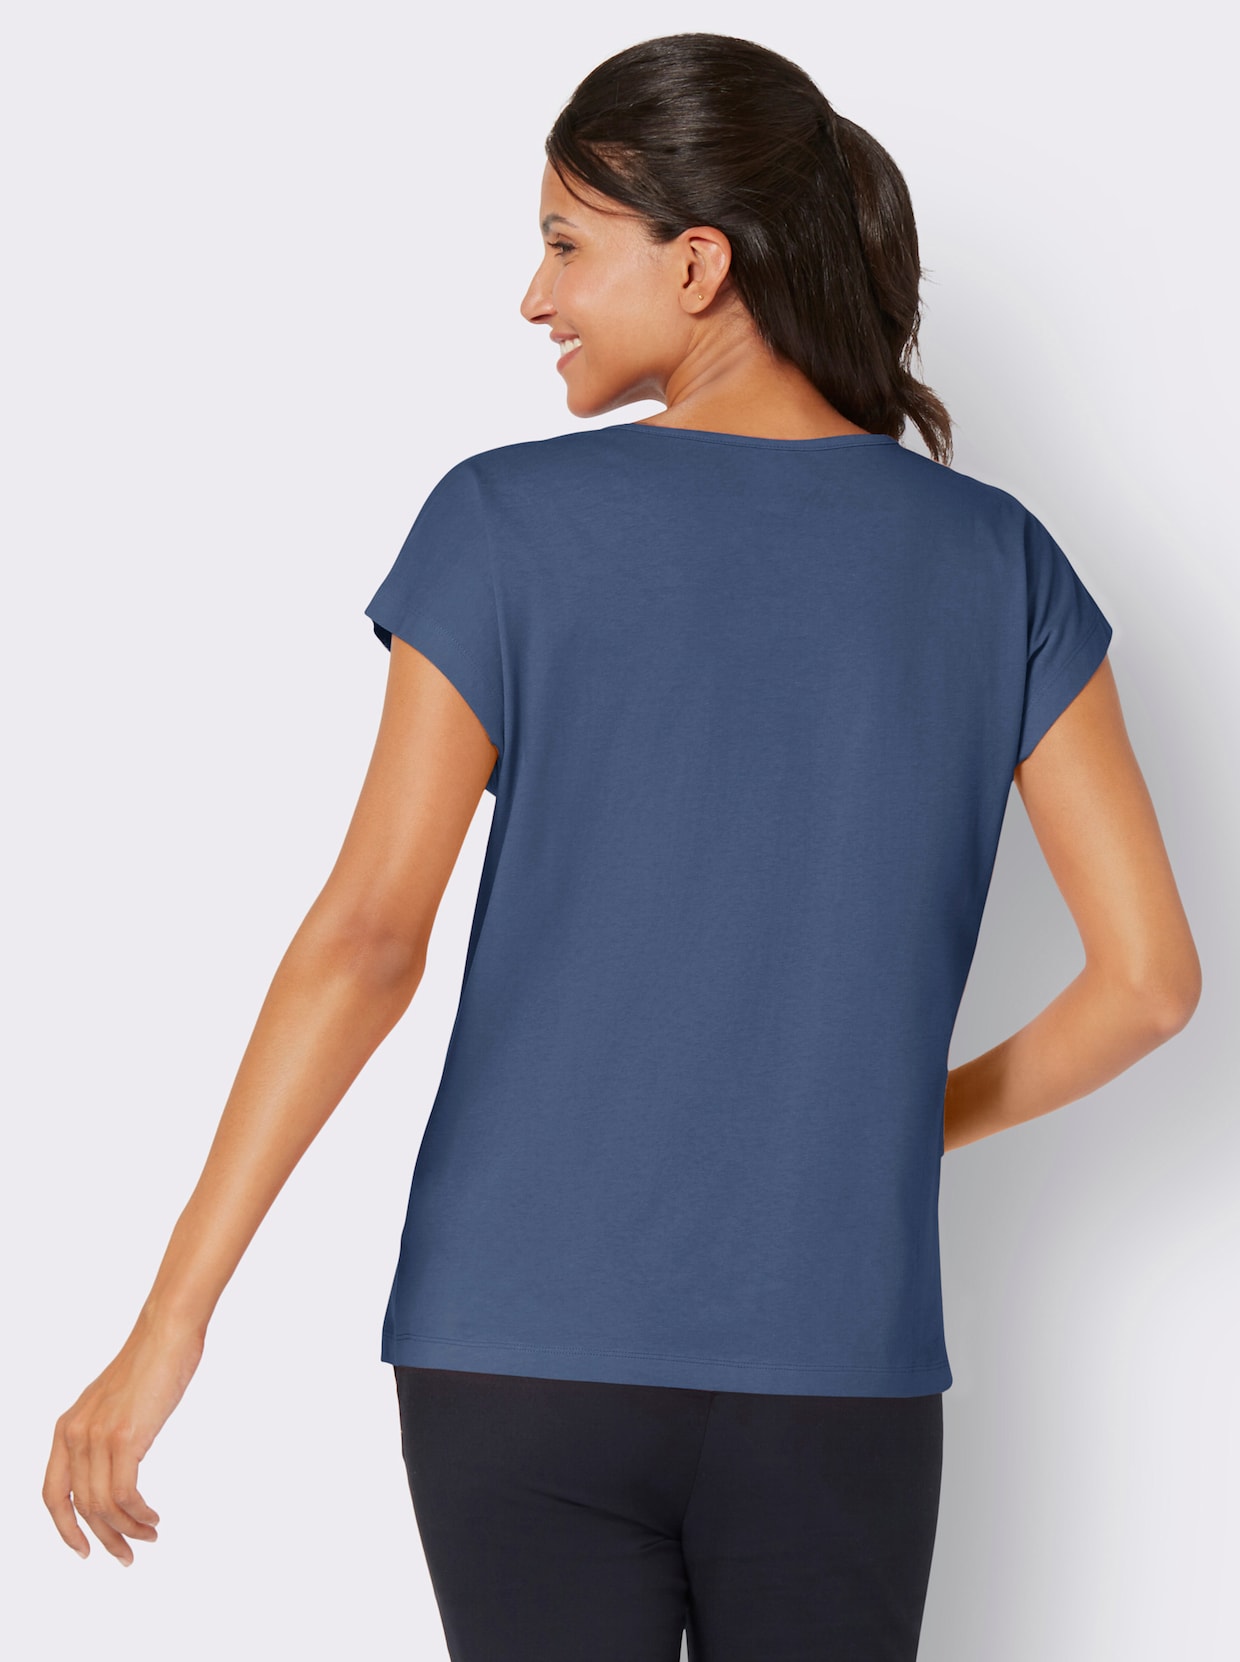 Tričko s krátkým rukávem - džínová modrá-ecru